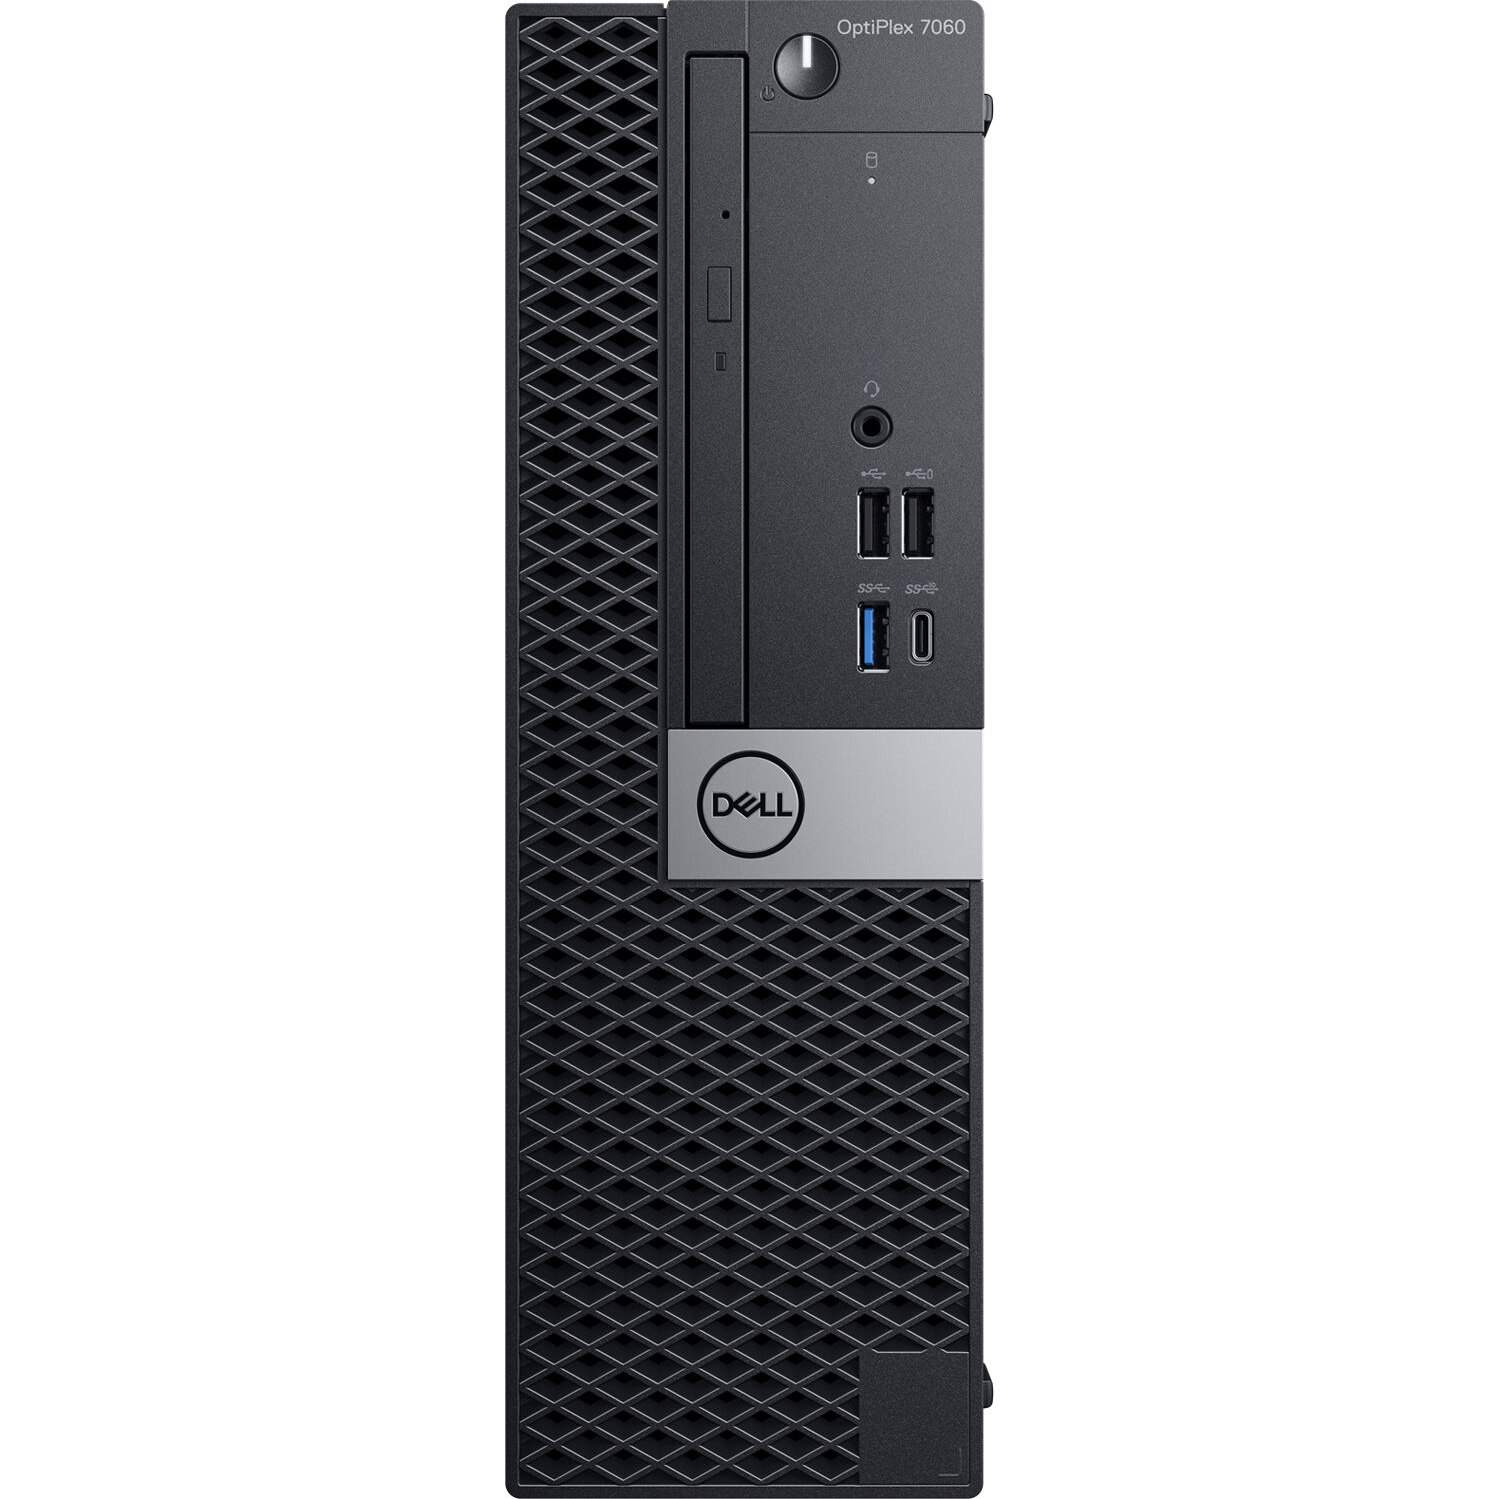 Dell, OPTIPLEX 7060, Intel Core i7-8700, 3.20 GHz, HDD: 512 GB SSD, RAM: 8 GB, video: Intel HD Graphics 630, SFF